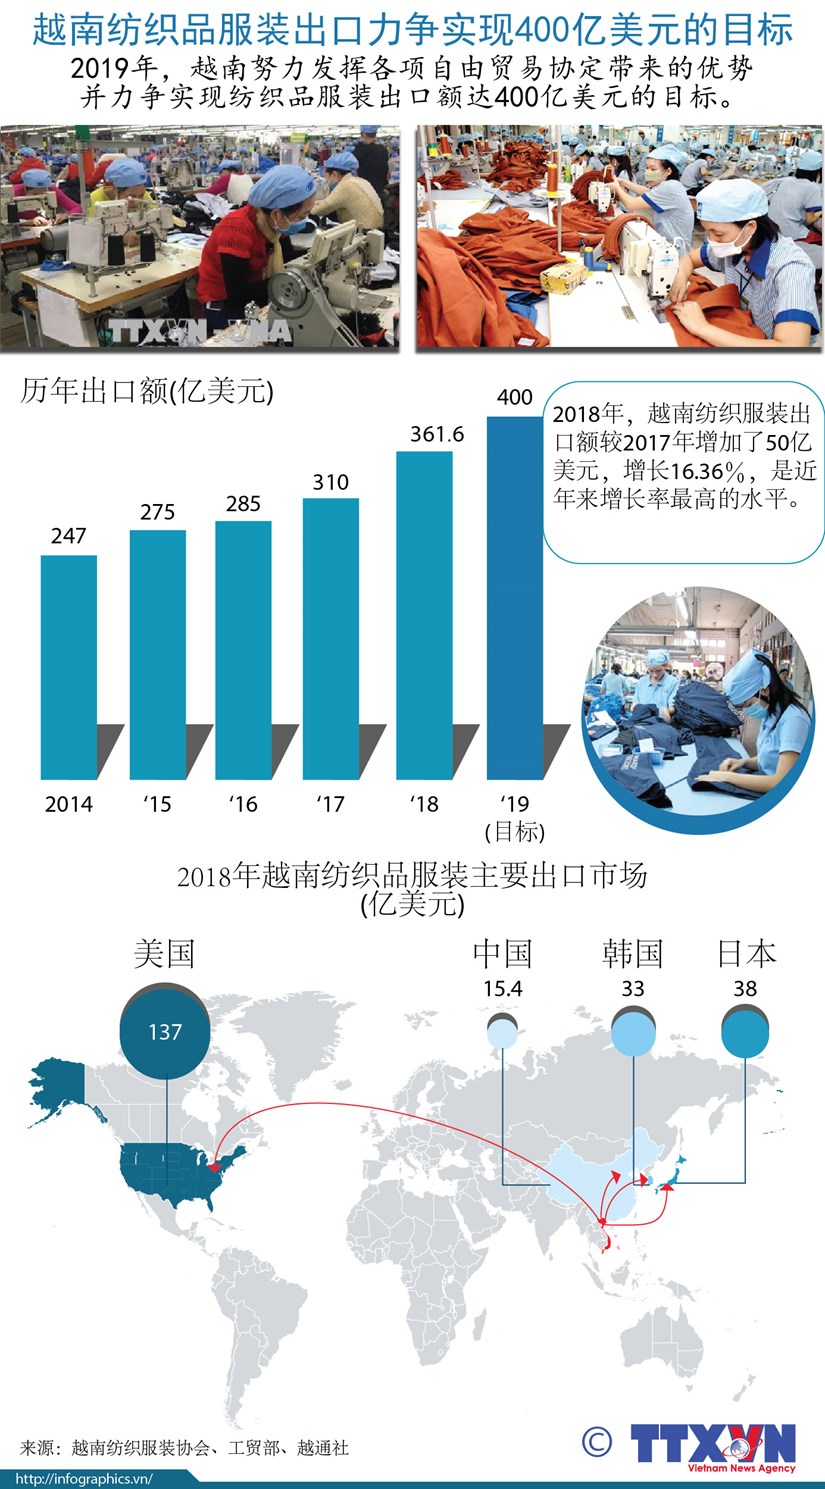 图表新闻：越南纺织品服装出口力争实现400亿美元的目标 hinh anh 1